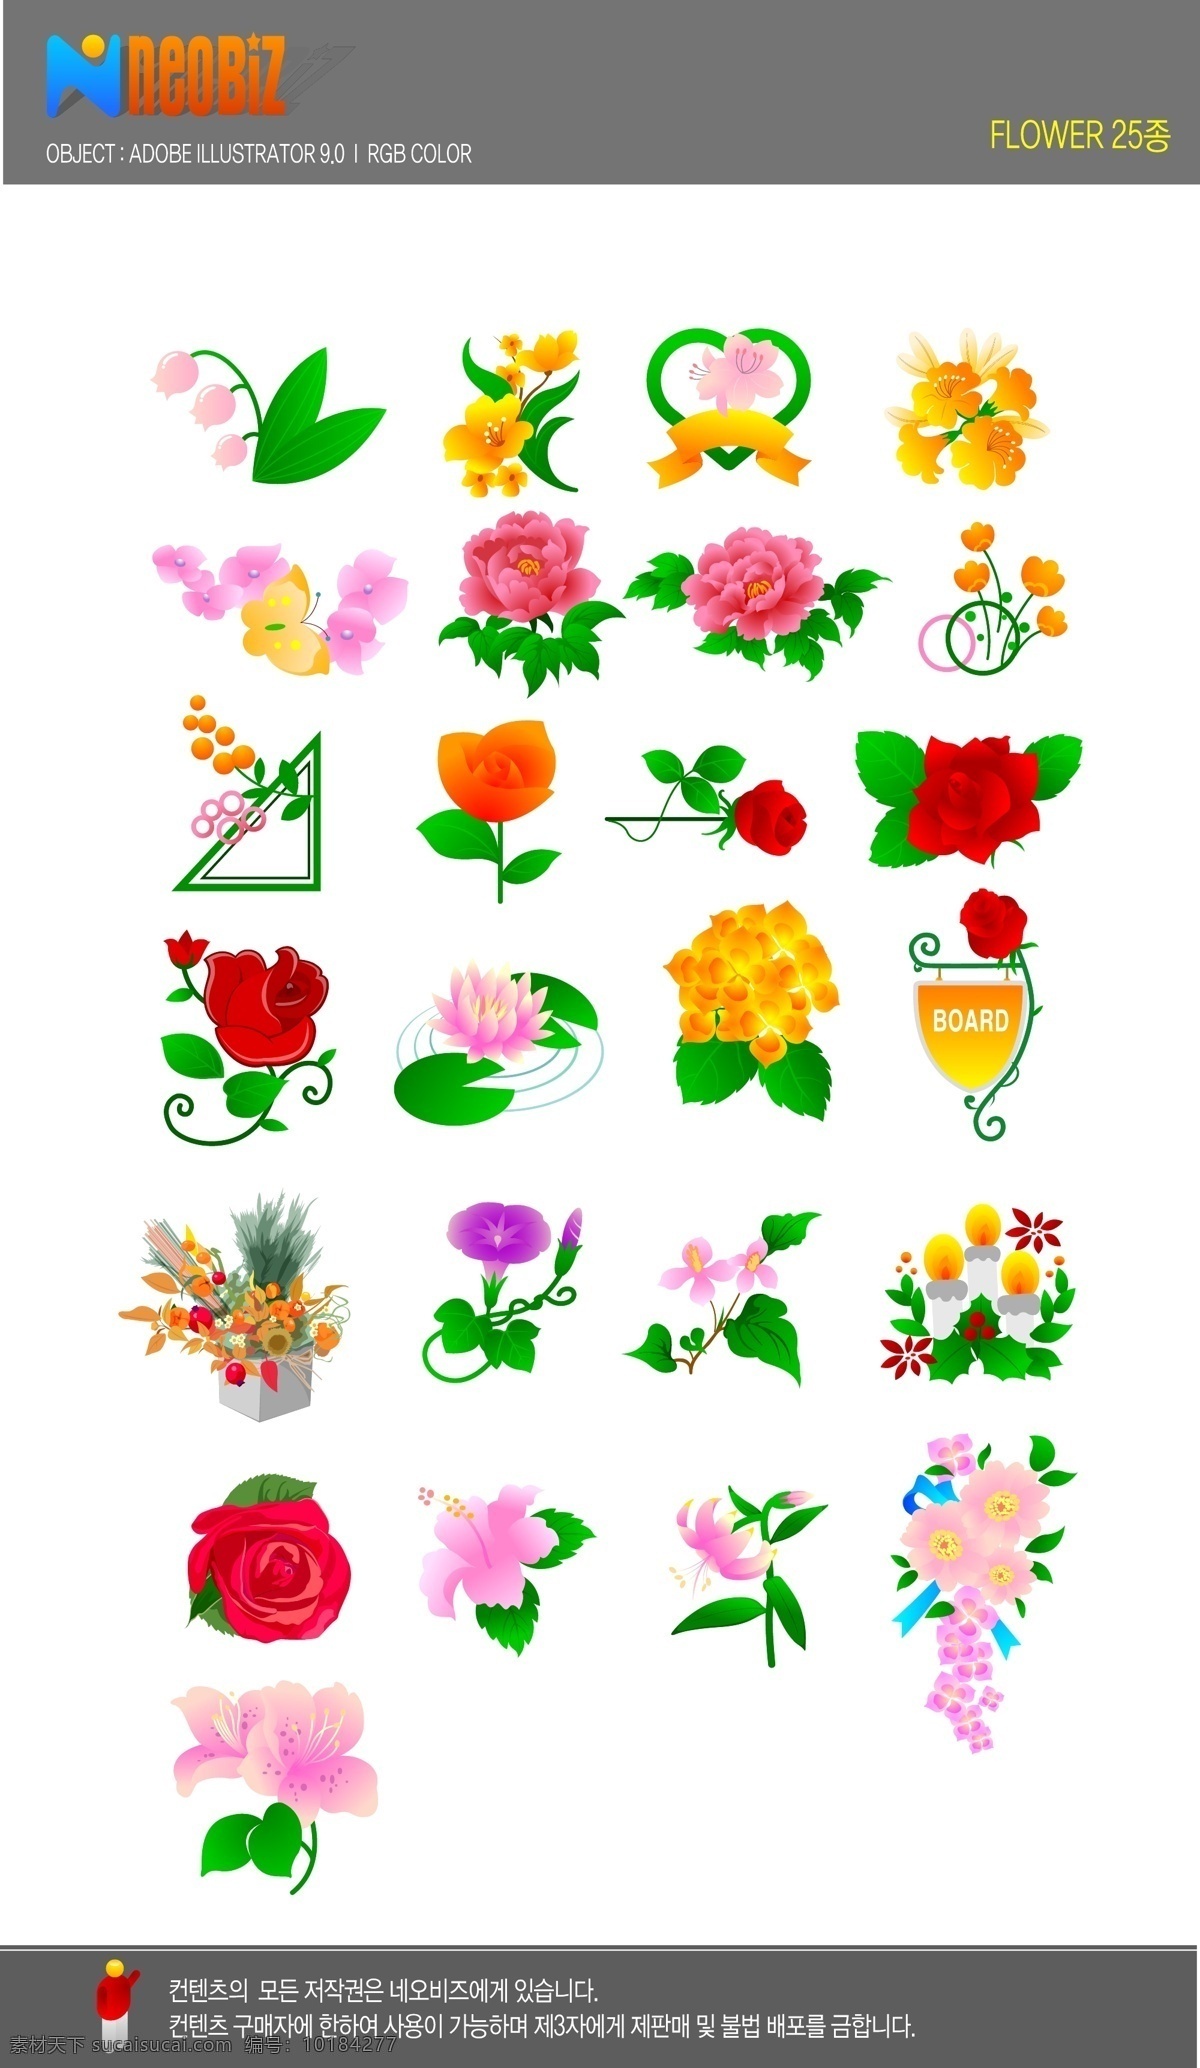 朵 花 芙蓉 玫瑰 牵牛花 25朵花 矢量图 其他矢量图